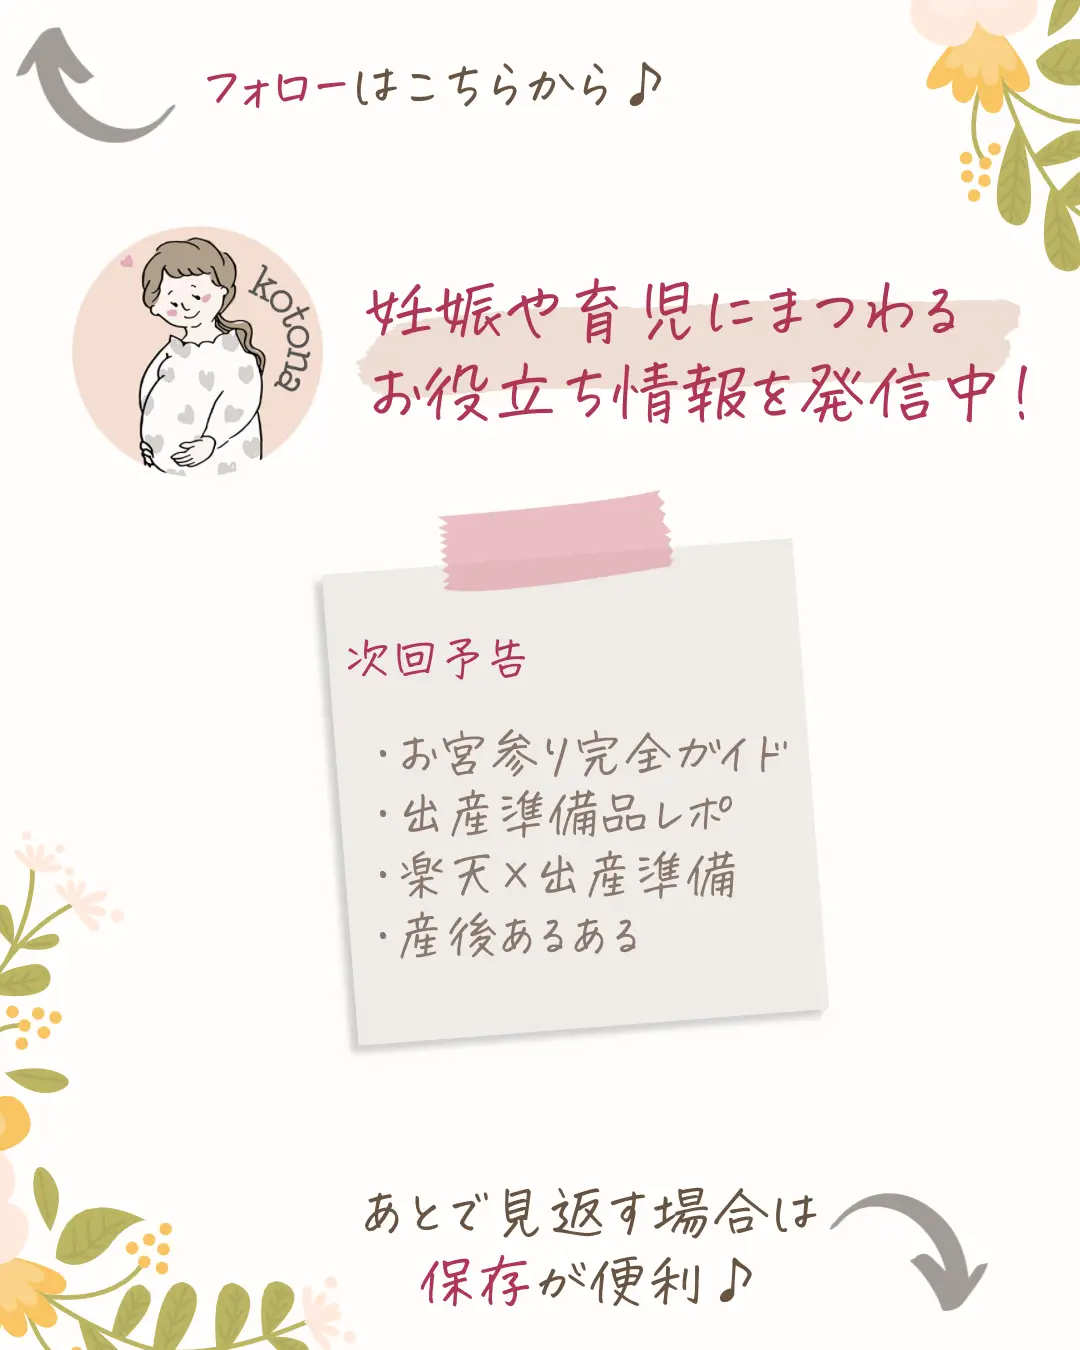 inujirushi.official ←プレママ・産後ママ向けお役立ち情報をチェック